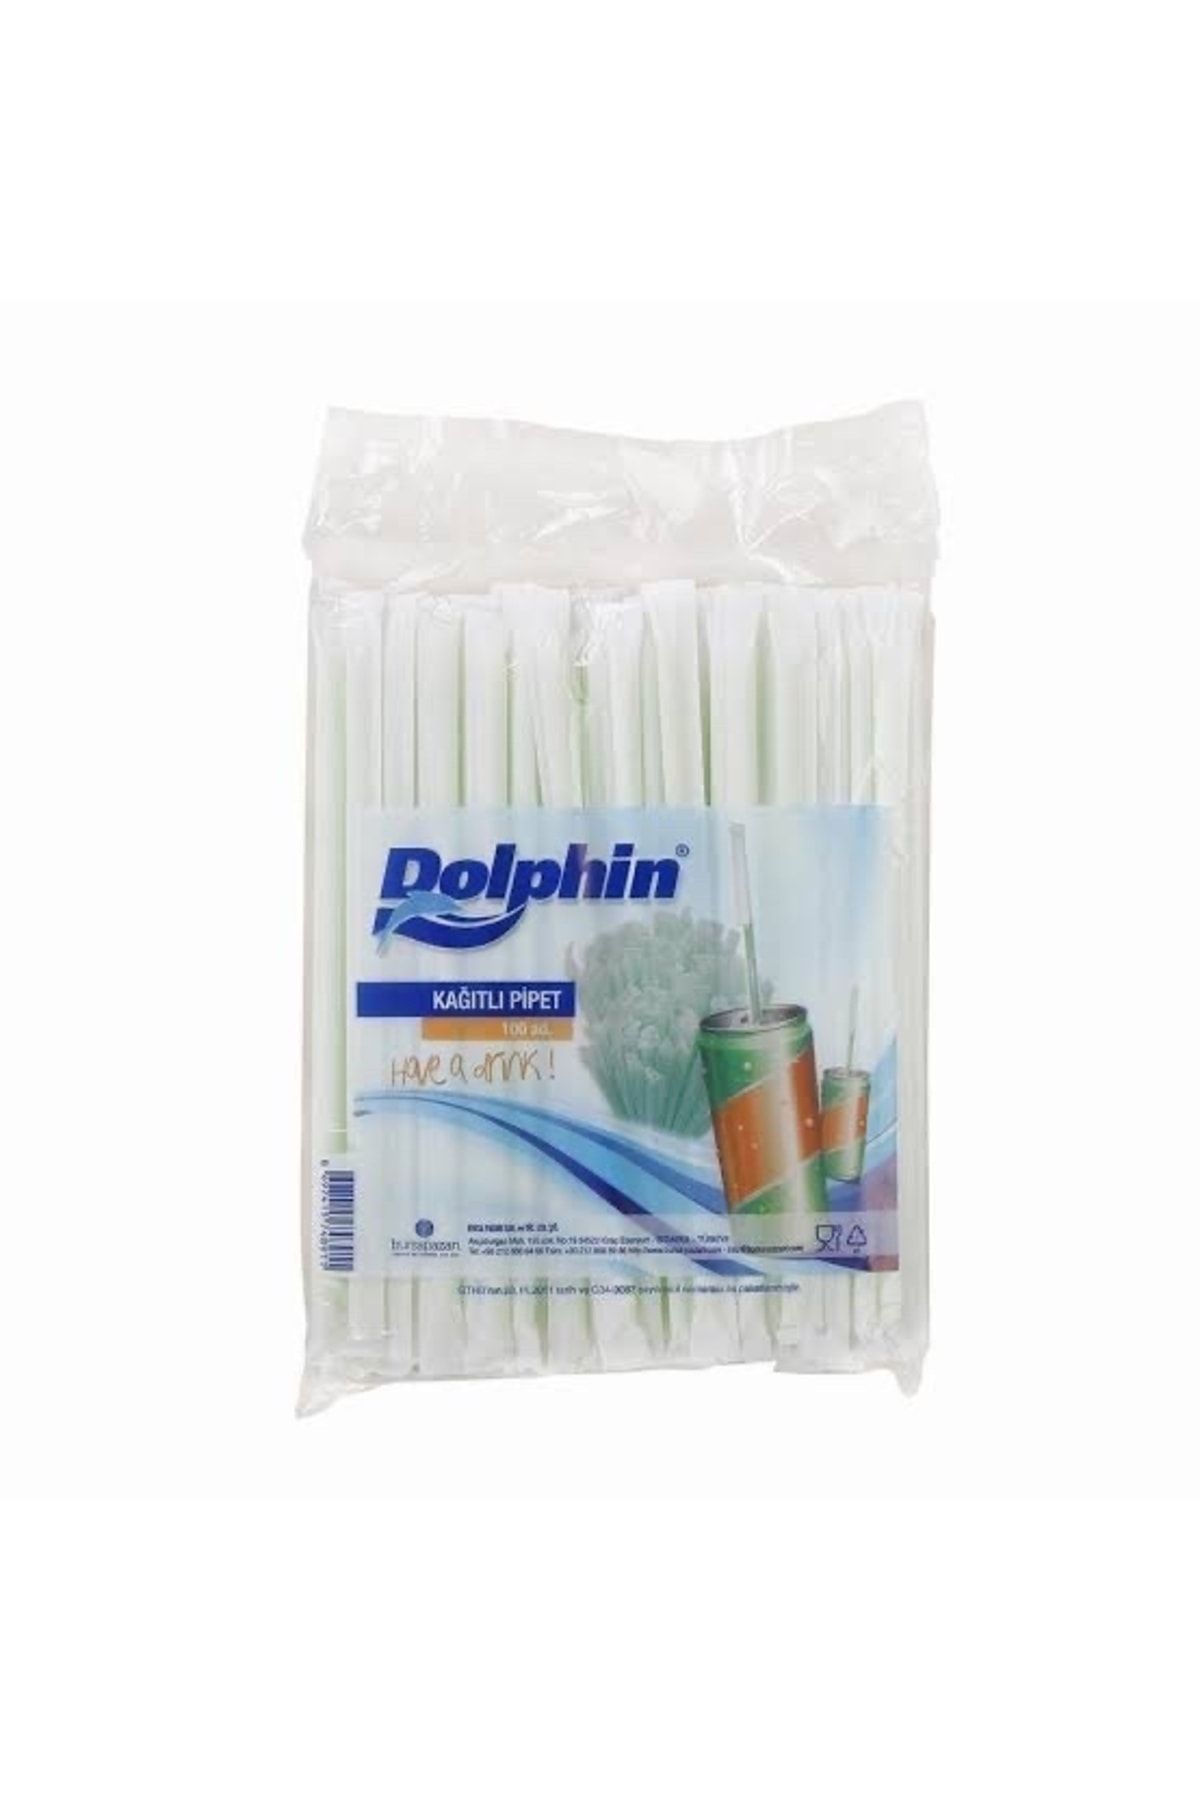 Dolphin Kağıtlı Pipet 100 Lü